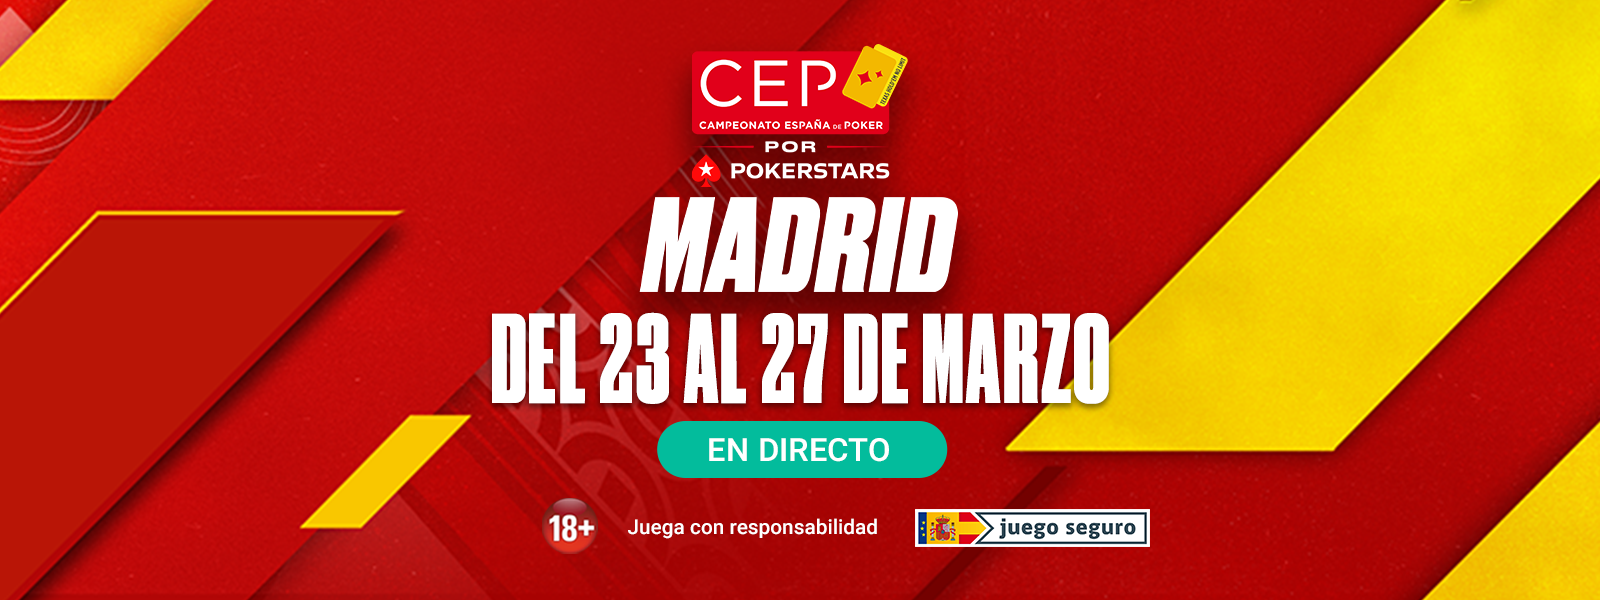 CEP Madrid